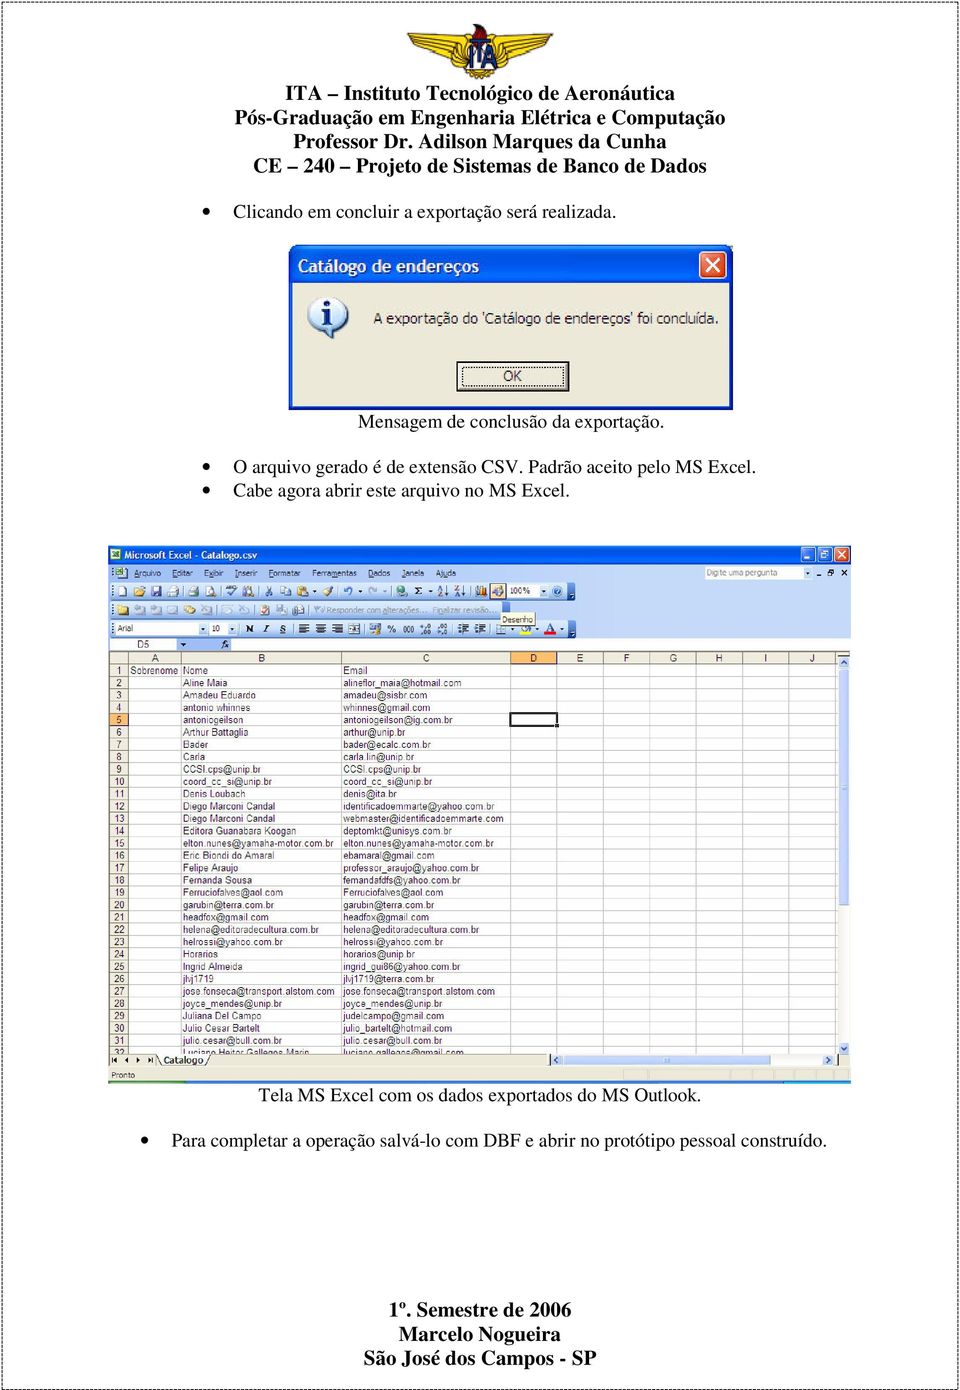 Padrão aceito pelo MS Excel. Cabe agora abrir este arquivo no MS Excel.